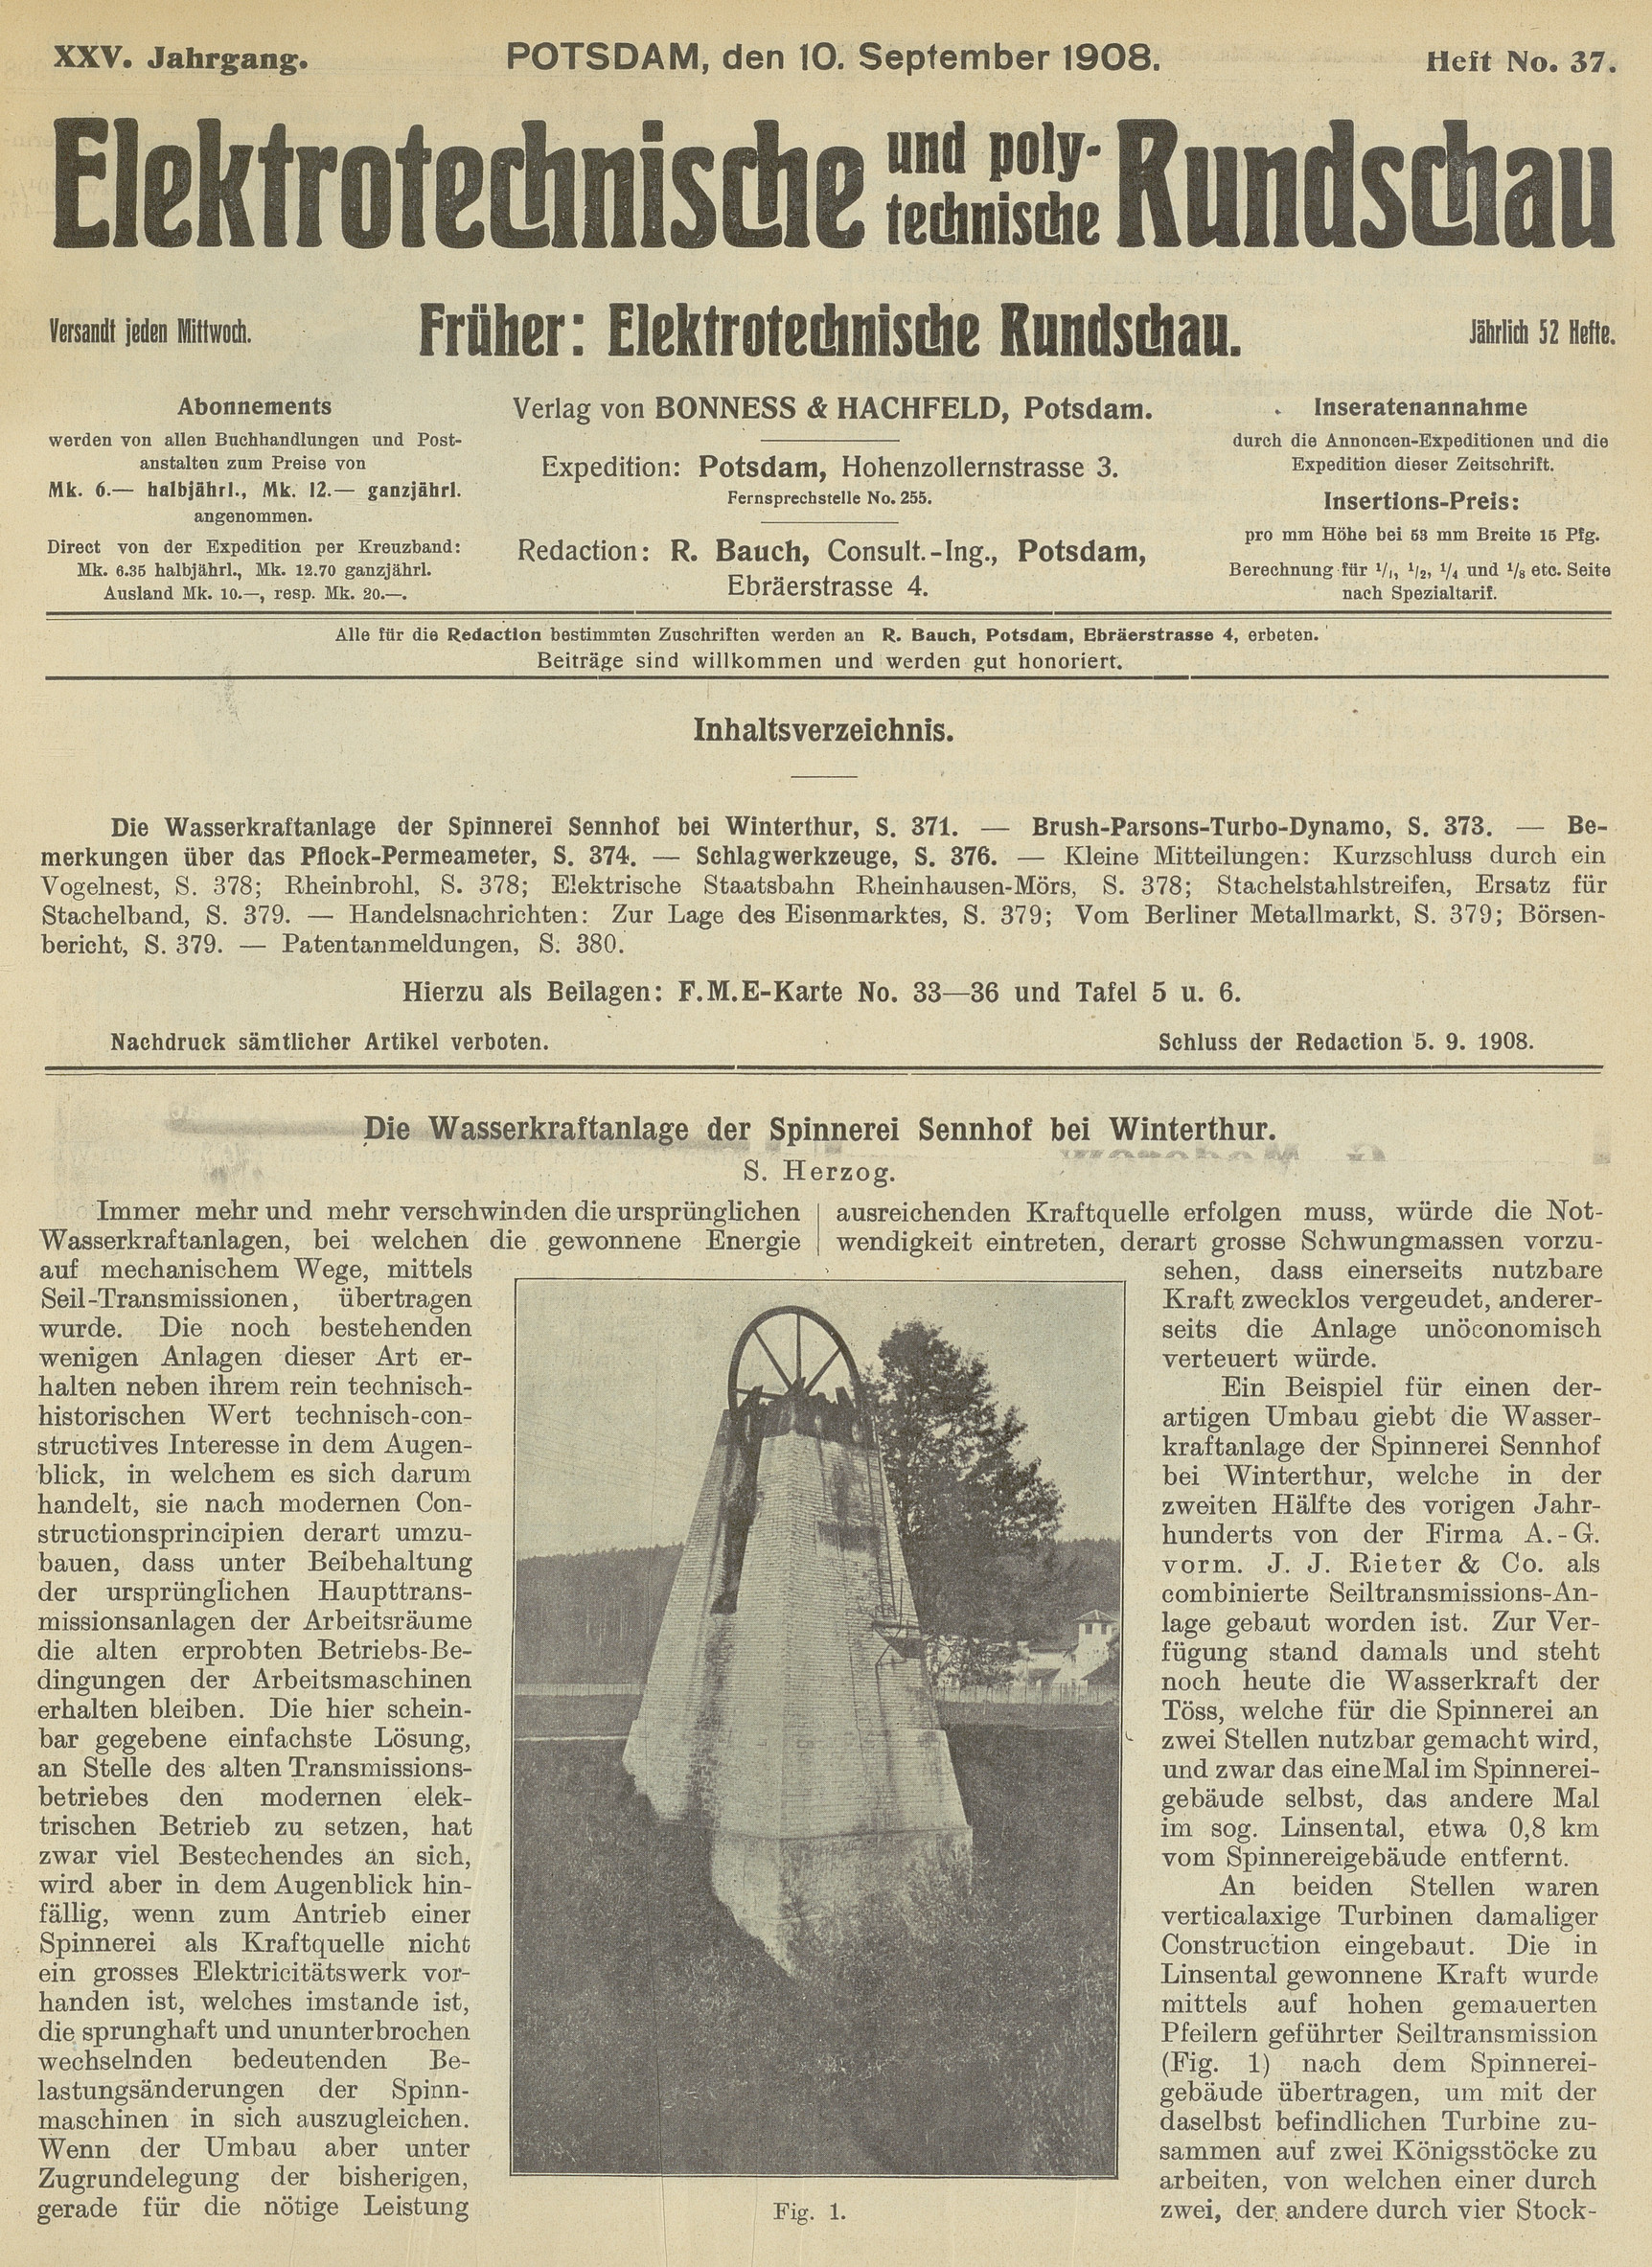 Elektrotechnische und polytechnische Rundschau, XXV. Jahrgang, Heft No. 37